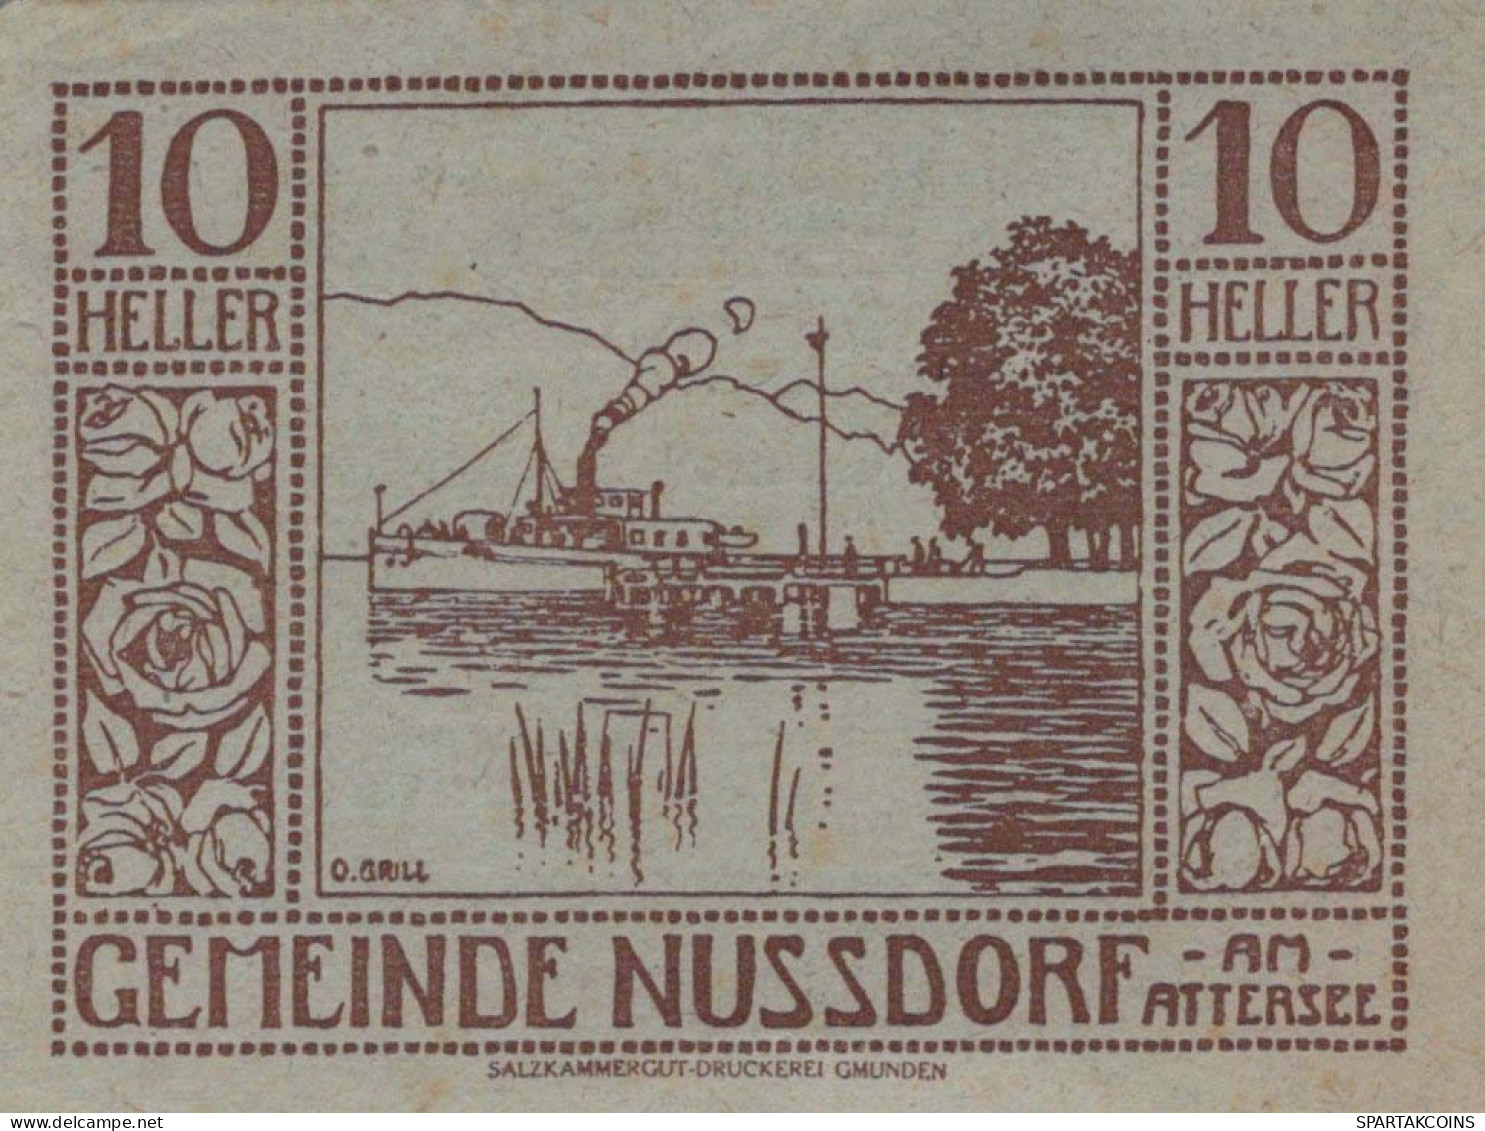 10 HELLER 1920 Stadt NUSSDORF AM ATTERSEE Oberösterreich Österreich UNC Österreich #PH410 - [11] Lokale Uitgaven